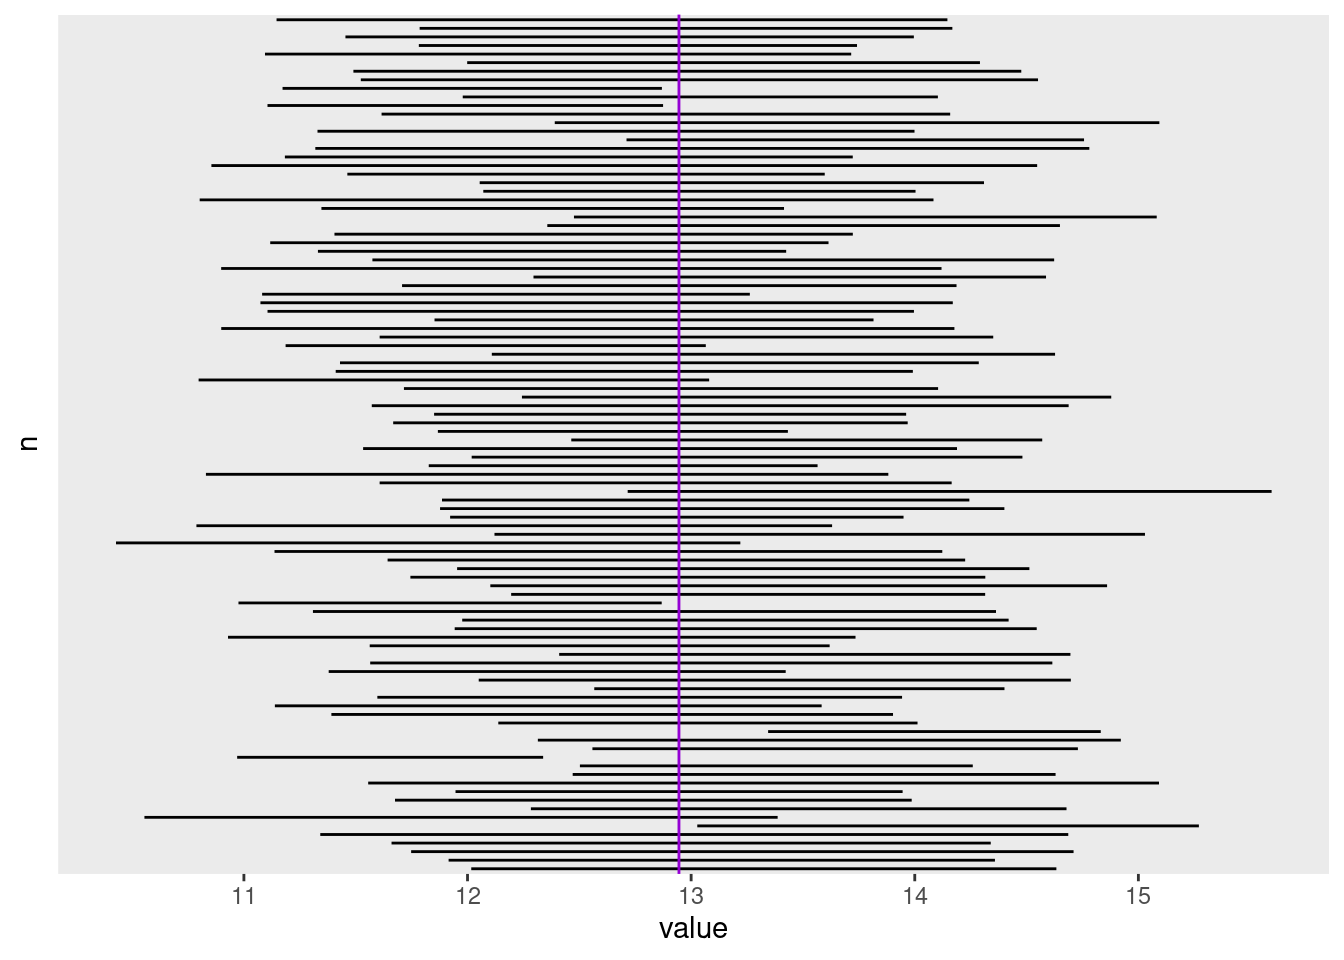 Intervalos de confiança simulados para várias amostragens de uma população. A média populacional é representada pela linha vertical violeta.